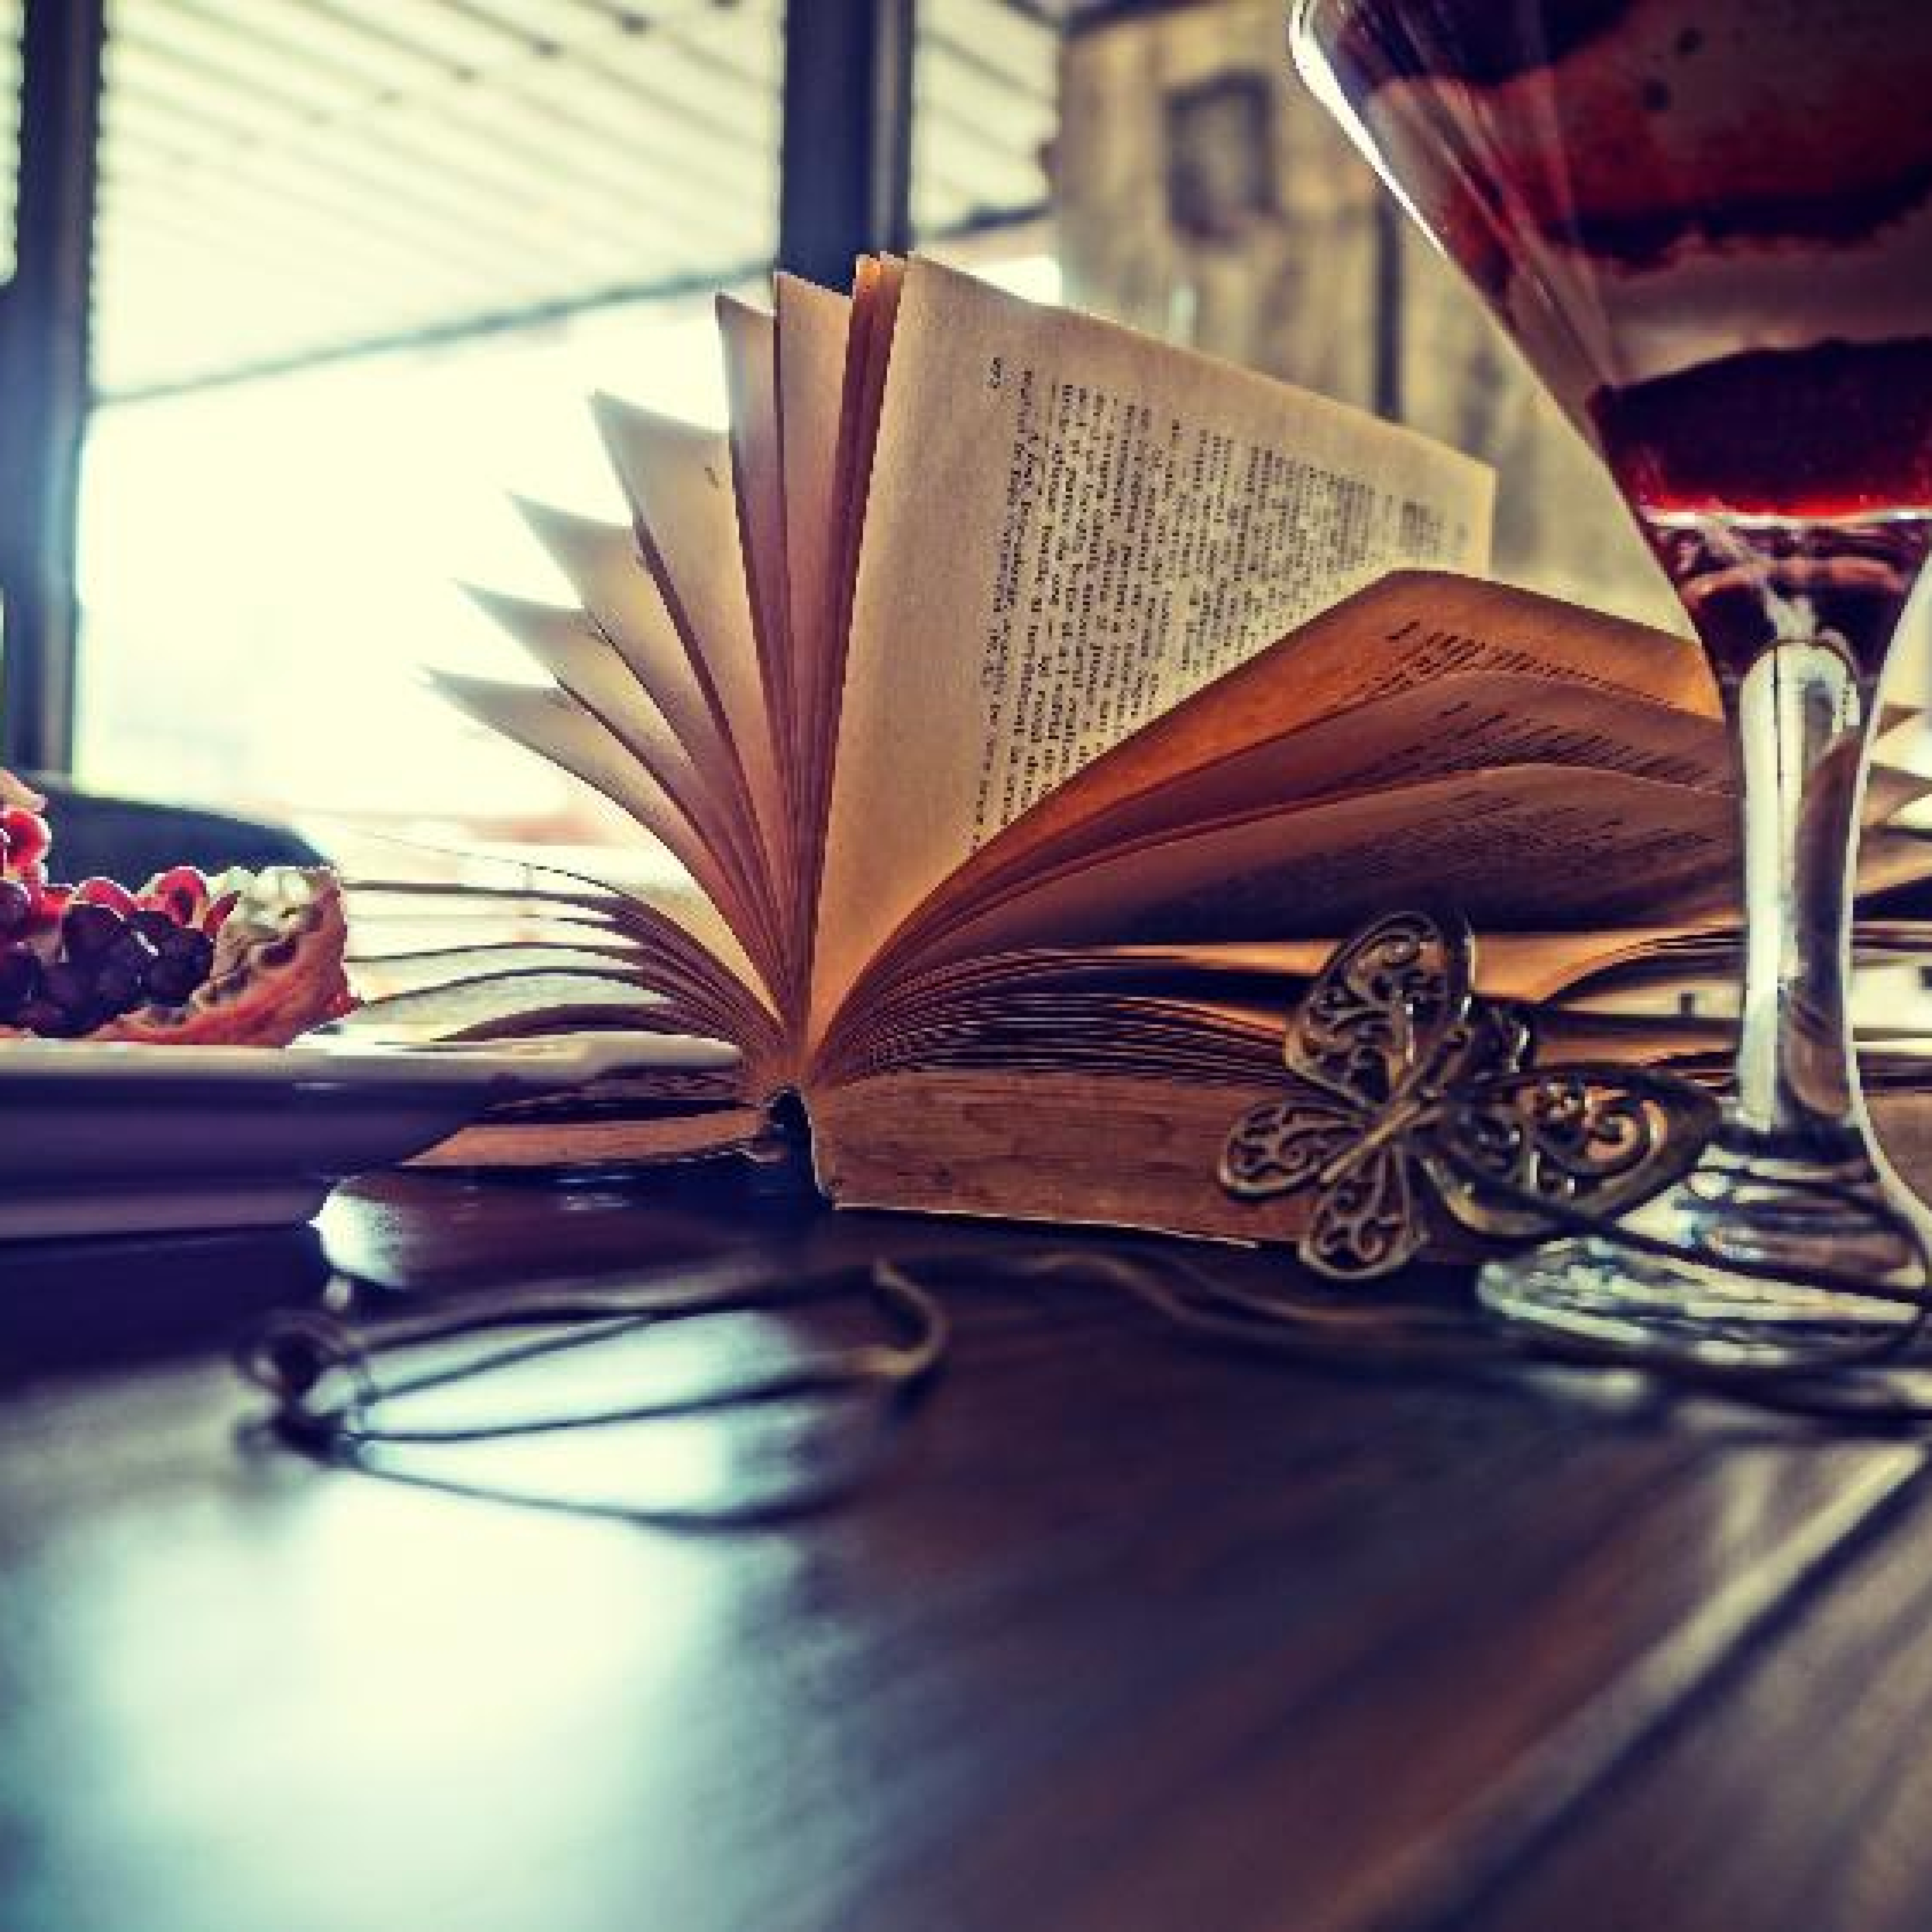 Auf einem Tisch liegt ein aufgeschlagenes Buch, ein Getränk und eine Schale mit Snacks sind zu sehen.